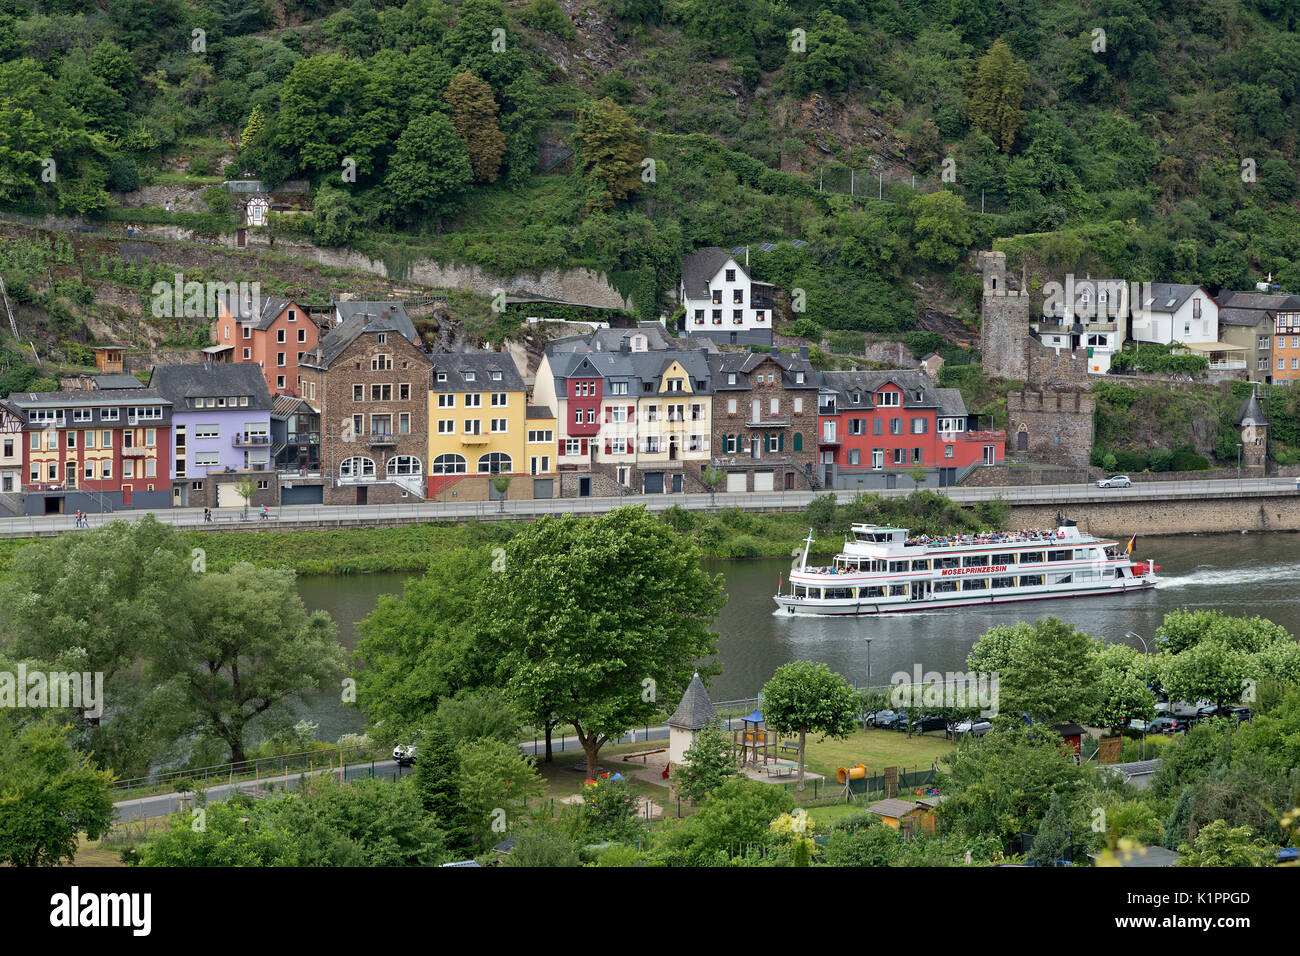 excursion boat, Cochem, Moselle, Rhineland-Palatinate, Germany Stock Photo